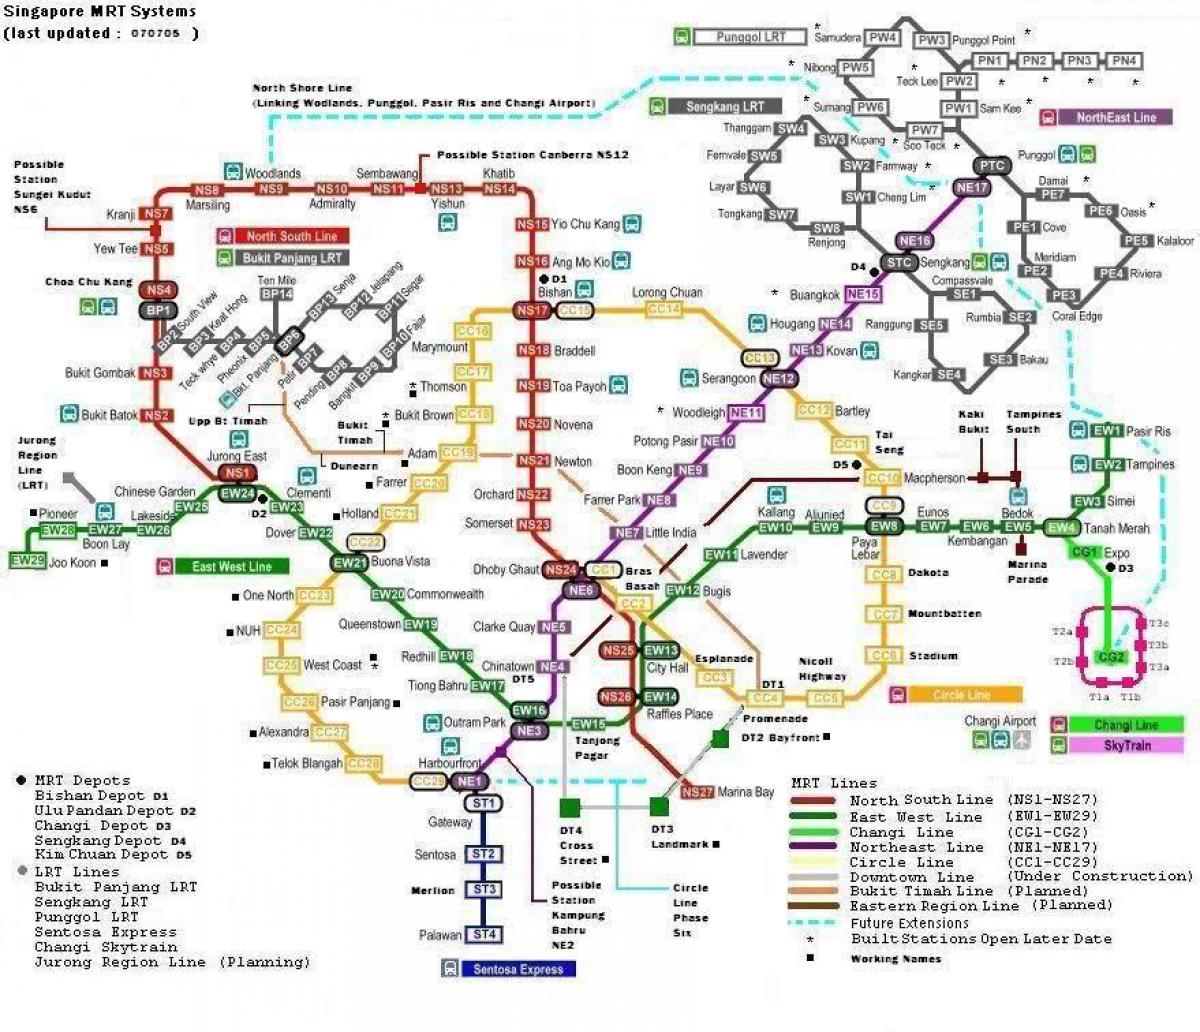 એમઆરટી 7 સ્ટેશનો નકશો